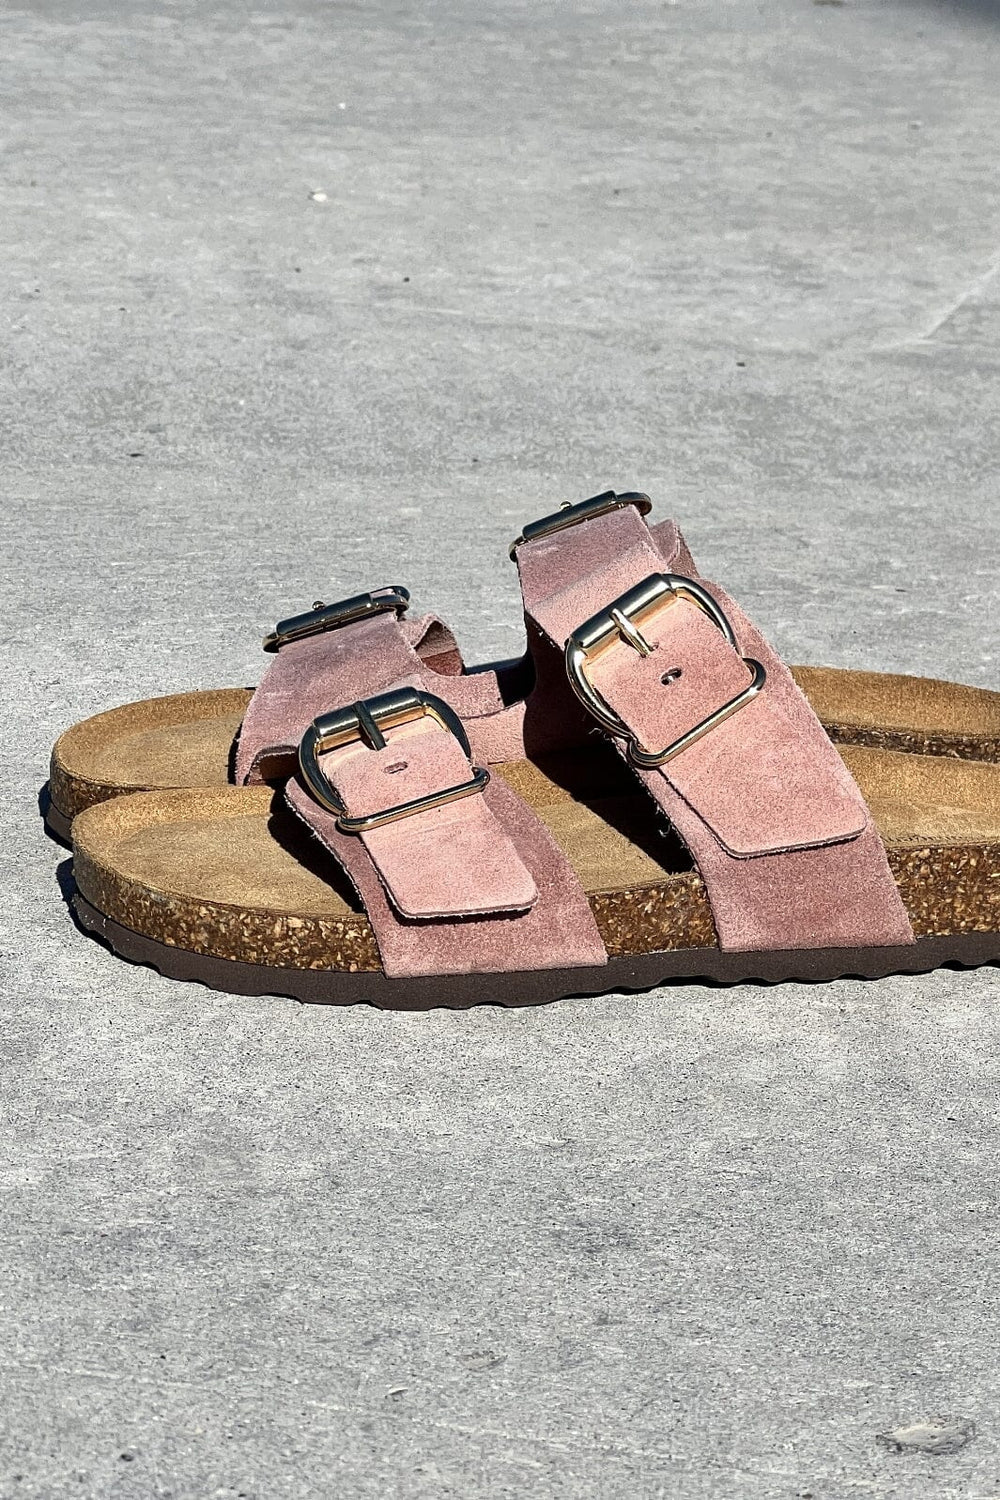 Sandaler dame » Køb fine sandaler hos Molly&My » nu!